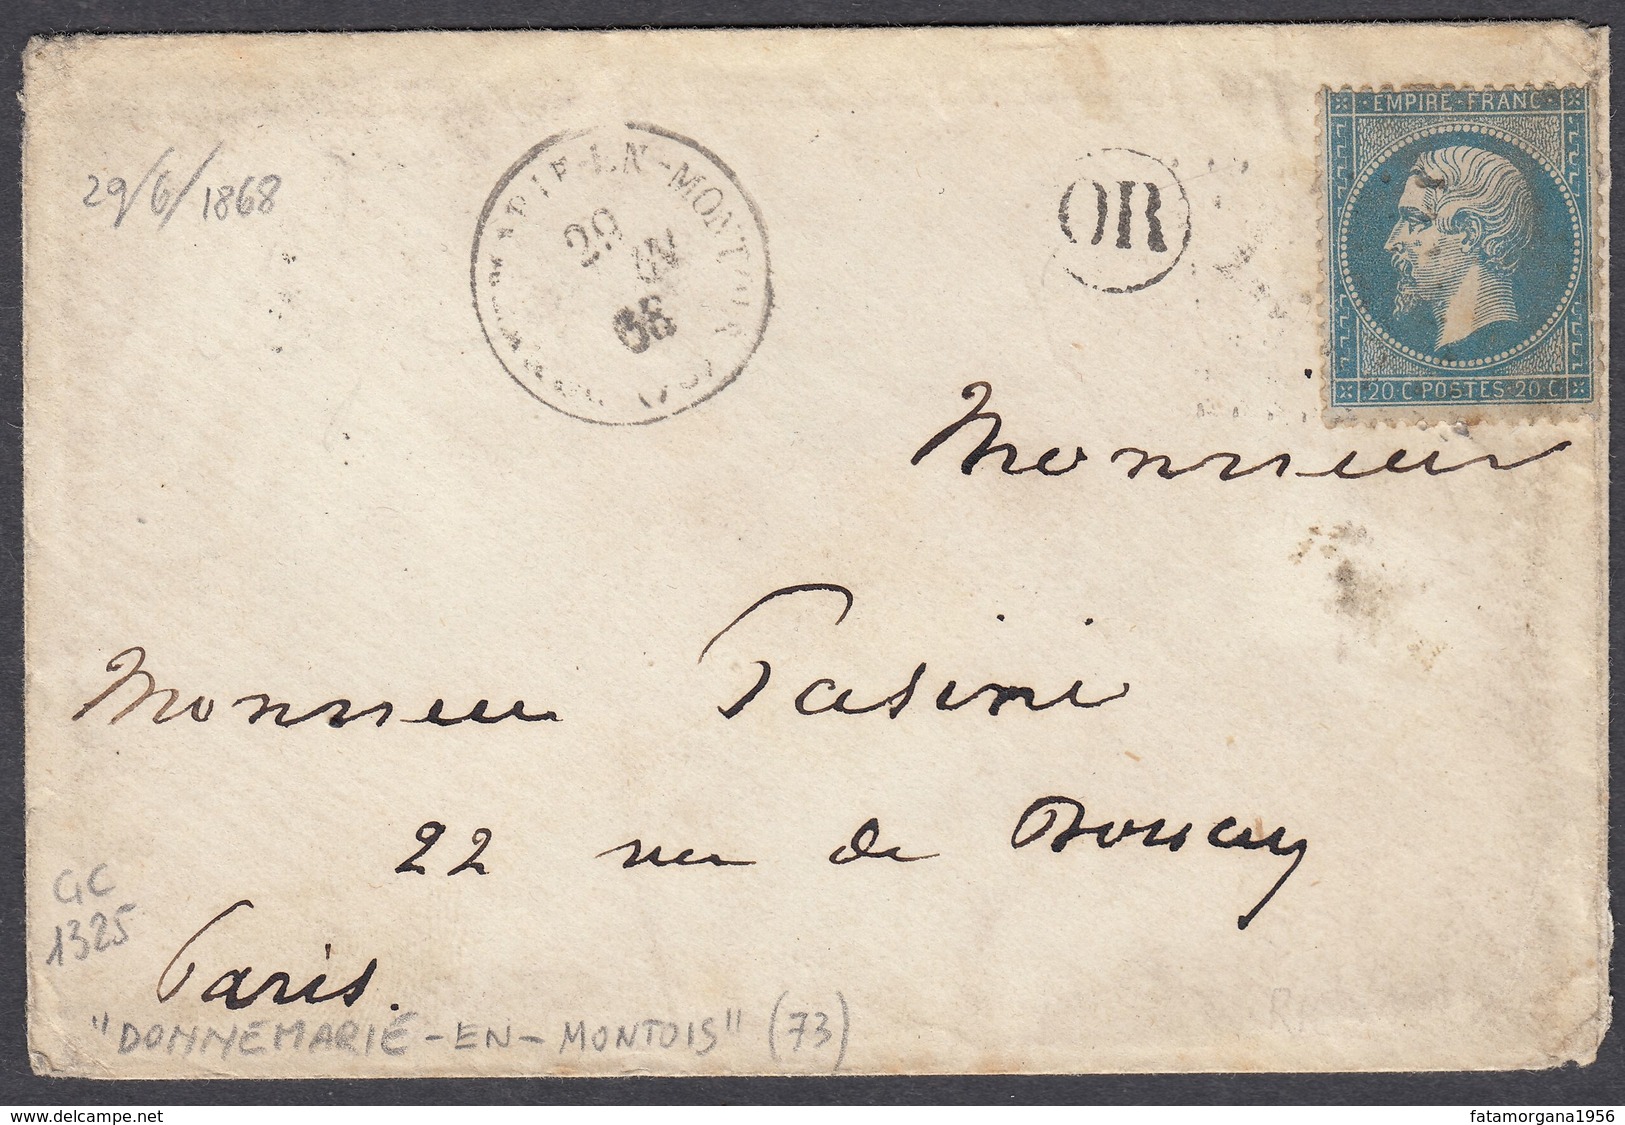 FRANCIA - FRANCE - 1862 - Yvert 22 Obliterato A Losanga, Su Piccola Busta Con Annullo OR E Timbro Del 29/06/1868 - 1849-1876: Klassik